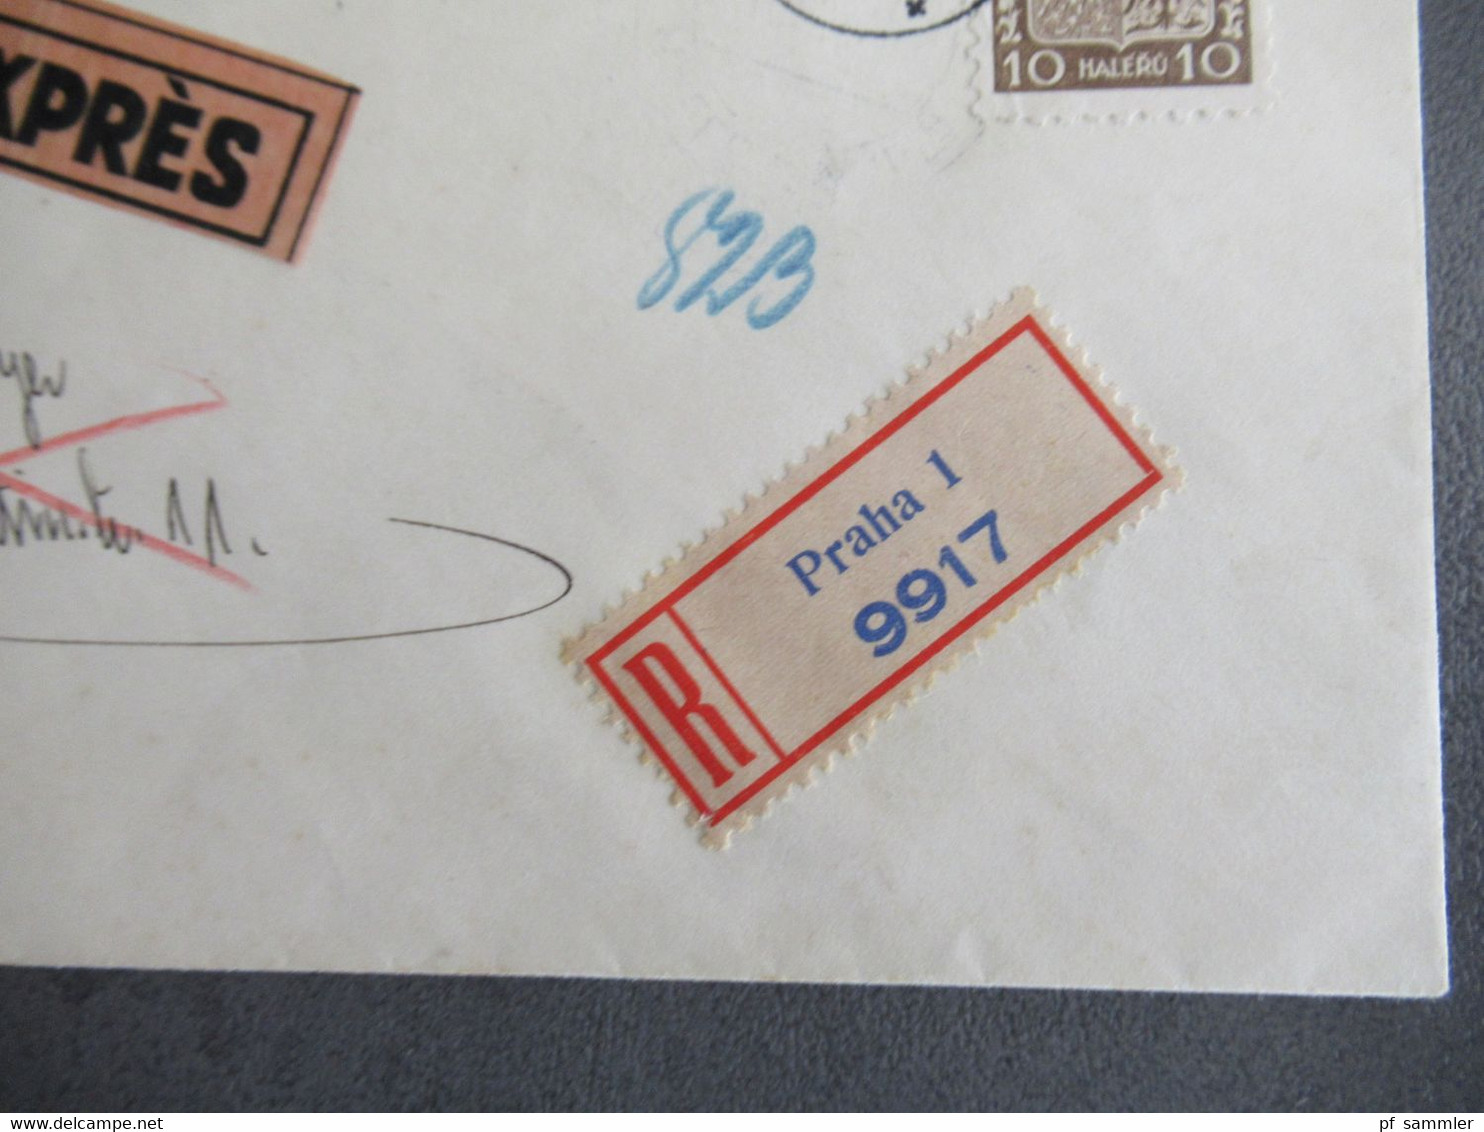 Böhmen Und Mähren 16.8.1939 Früher Beleg MiF Mit CSSR Marke Einschreiben Expres Ank. Stempel Halle Fernsprechamt - Briefe U. Dokumente